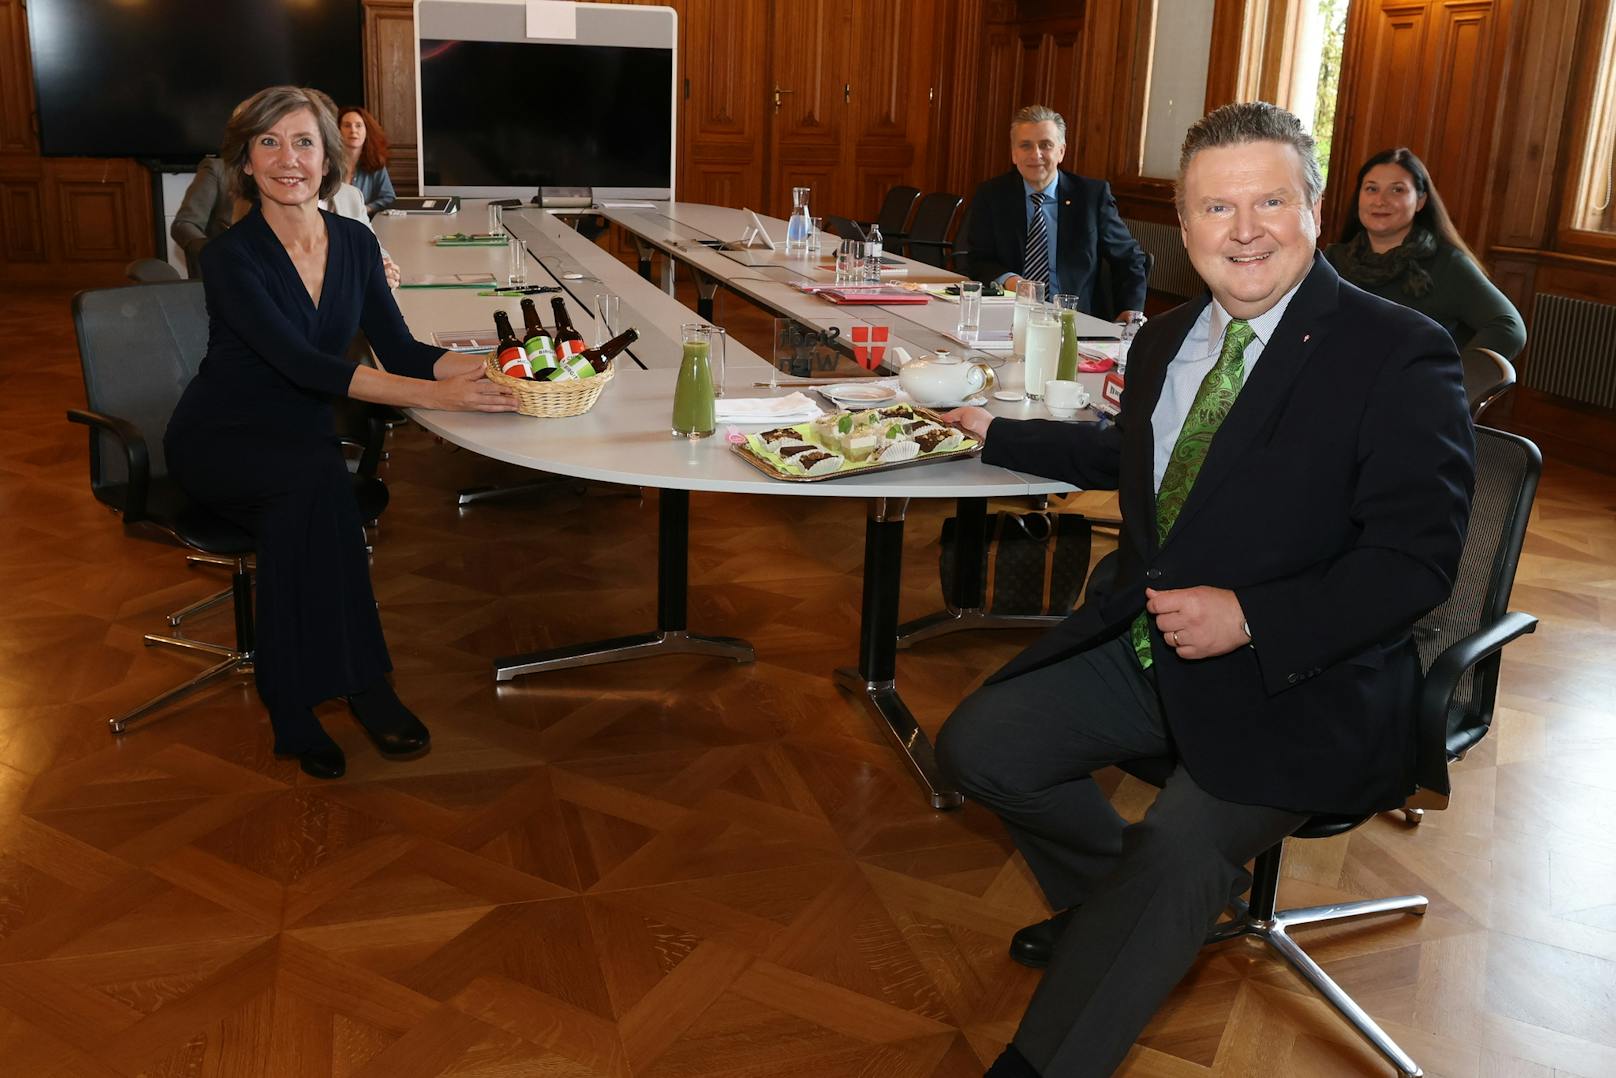 Grünen-Chefin Birgit Hebein überraschte Bürgermeister Michael Ludwig (SPÖ) mit Bier, er revanchierte sich mit veganer Bio-Bäckerei und Green Smoothies.